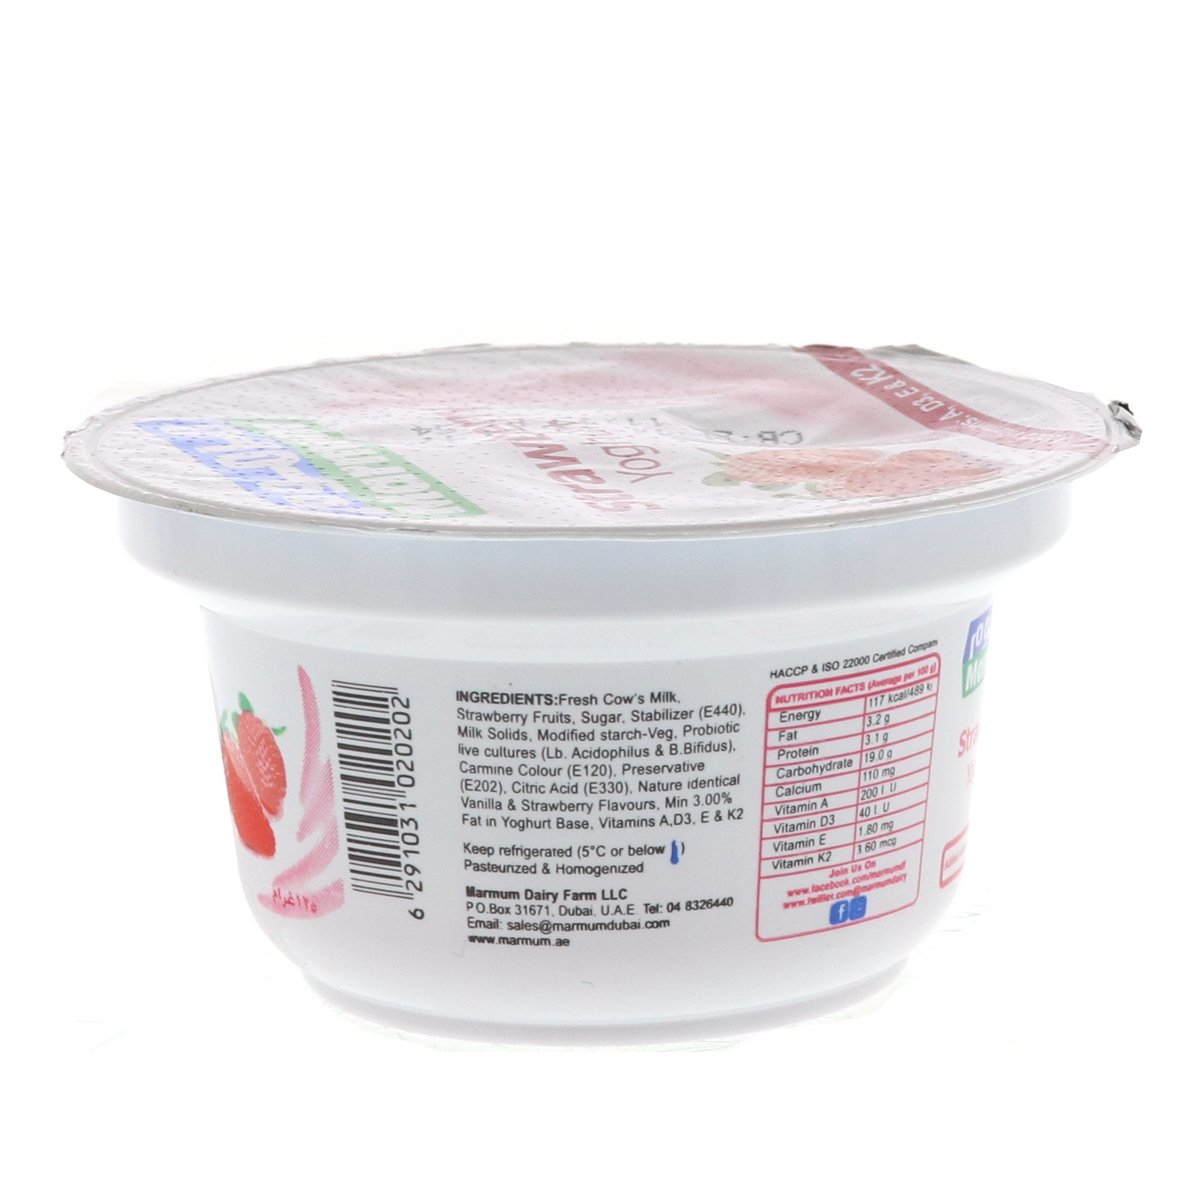 Marmum Strawberry Yoghurt 6 x 125 g